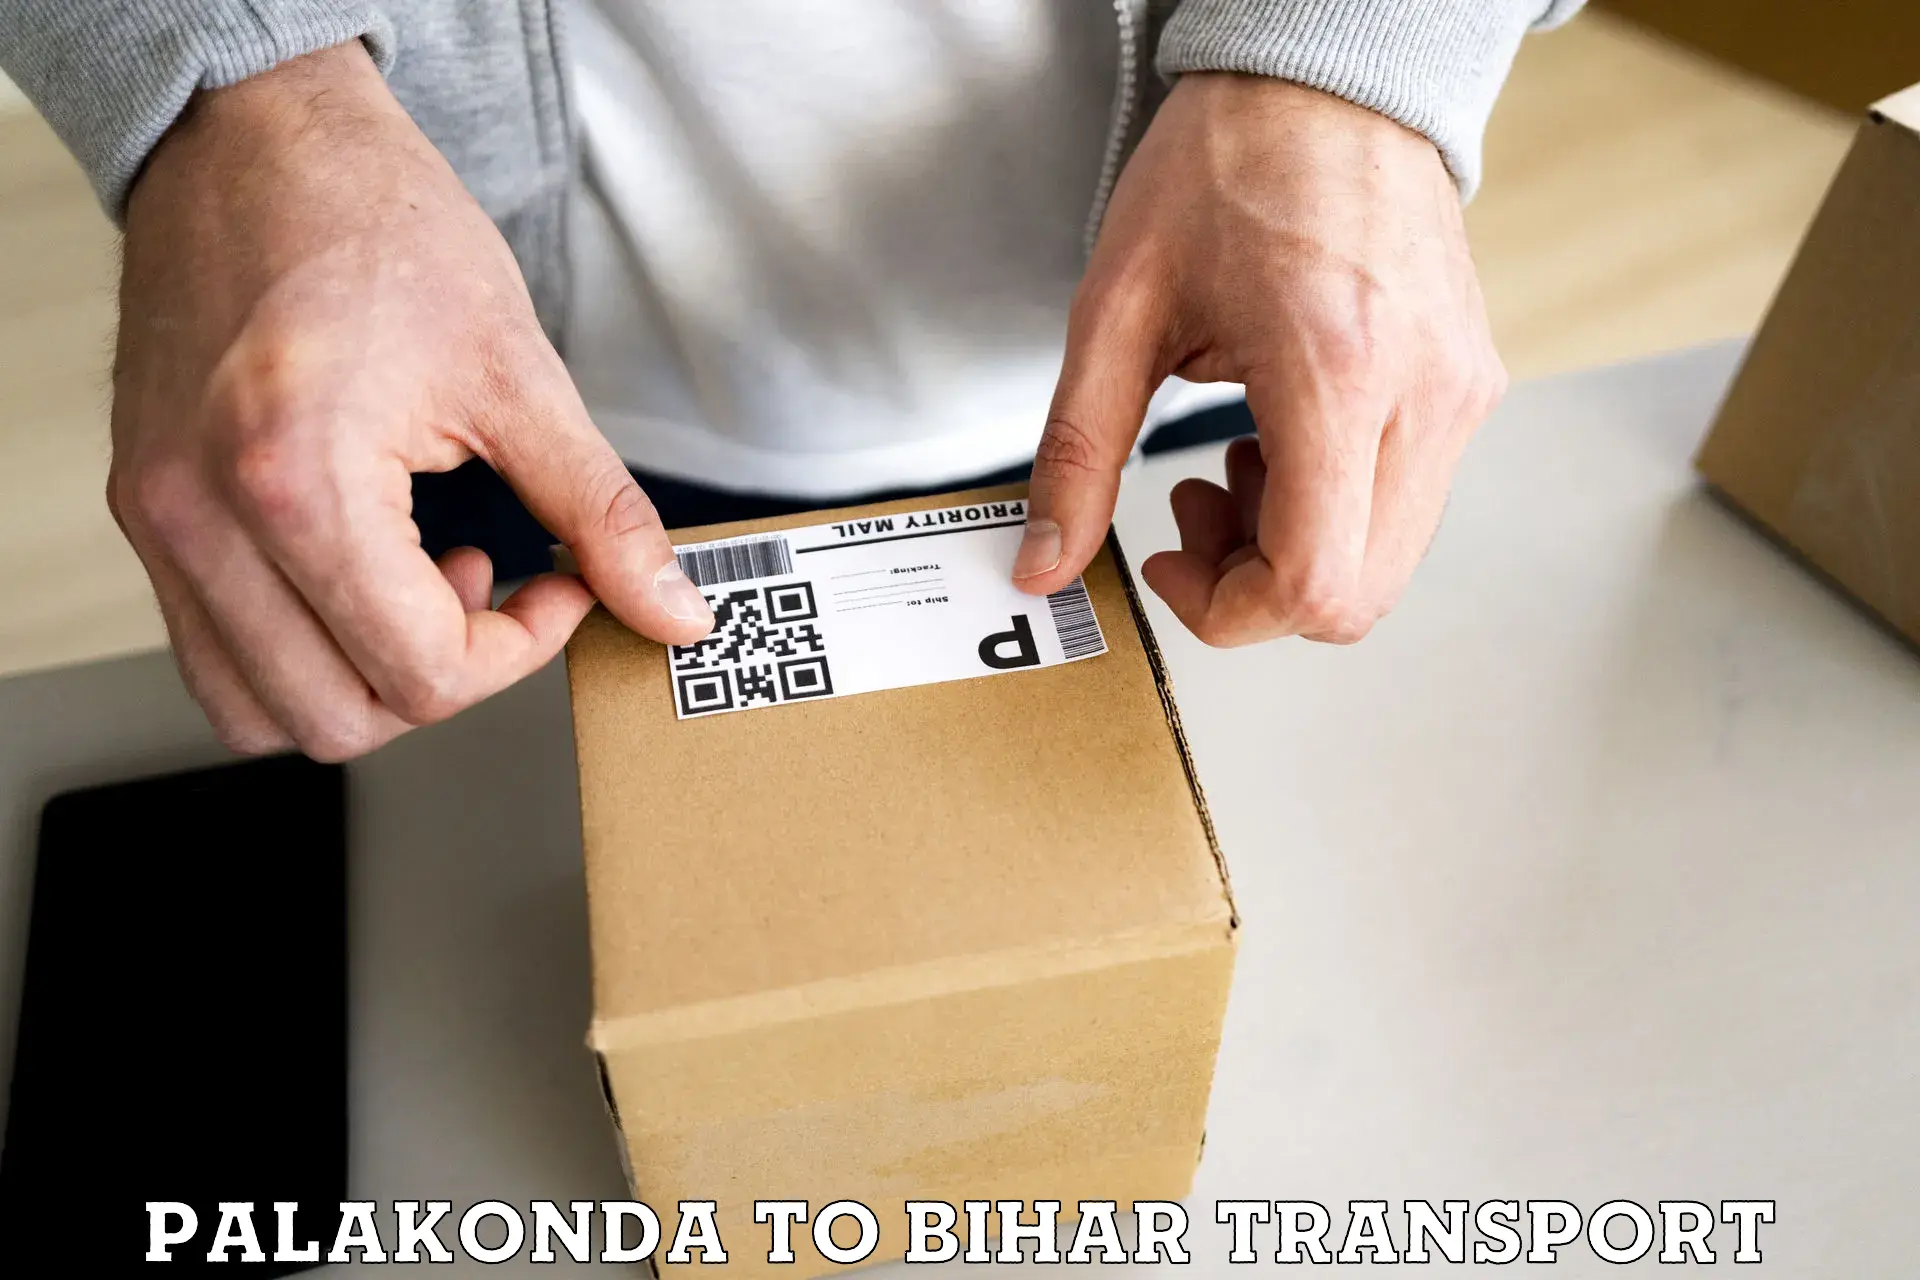 Two wheeler parcel service Palakonda to Tekari